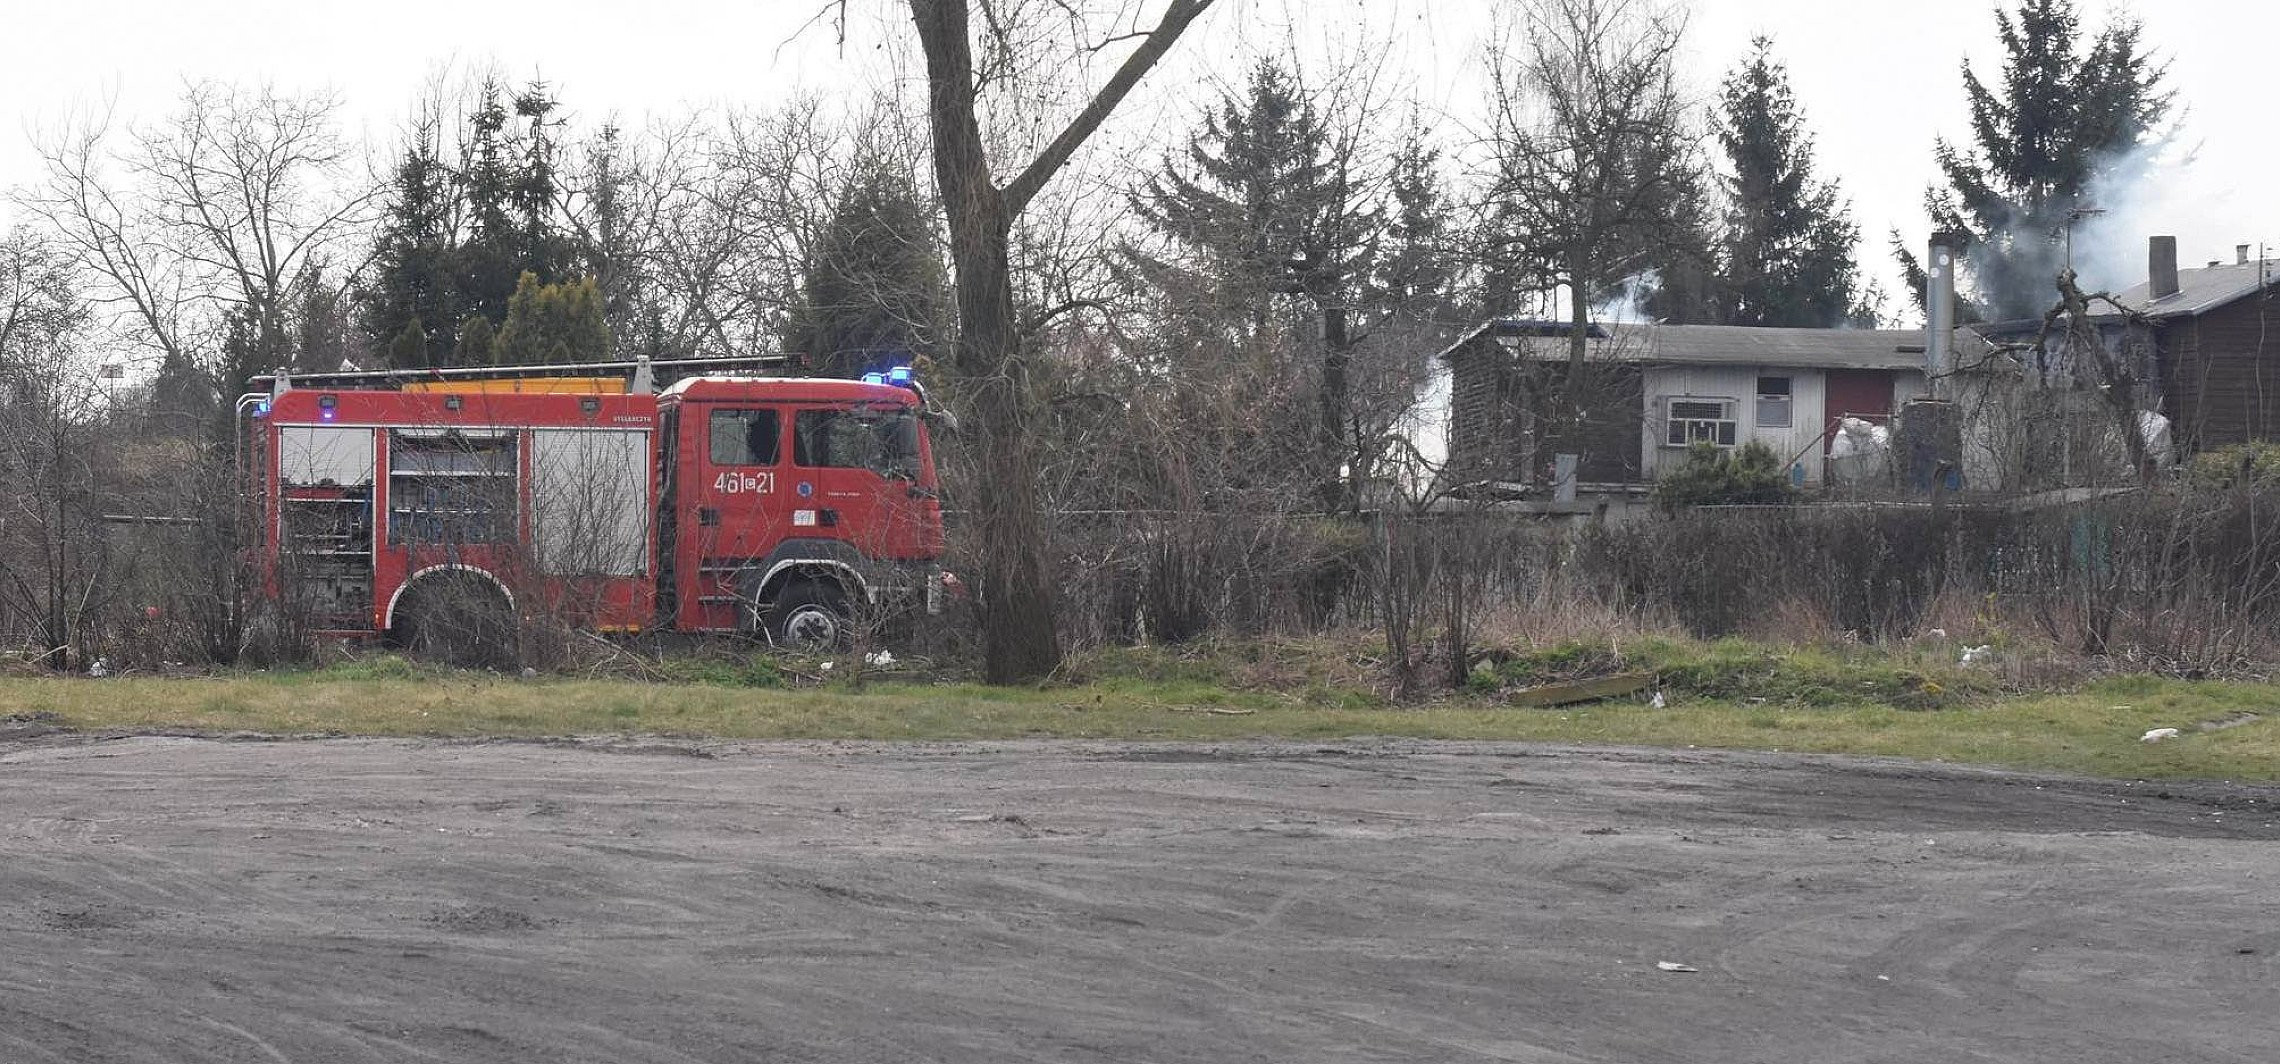 Inowrocław - Strażacy gaszą pożar altany ogrodowej